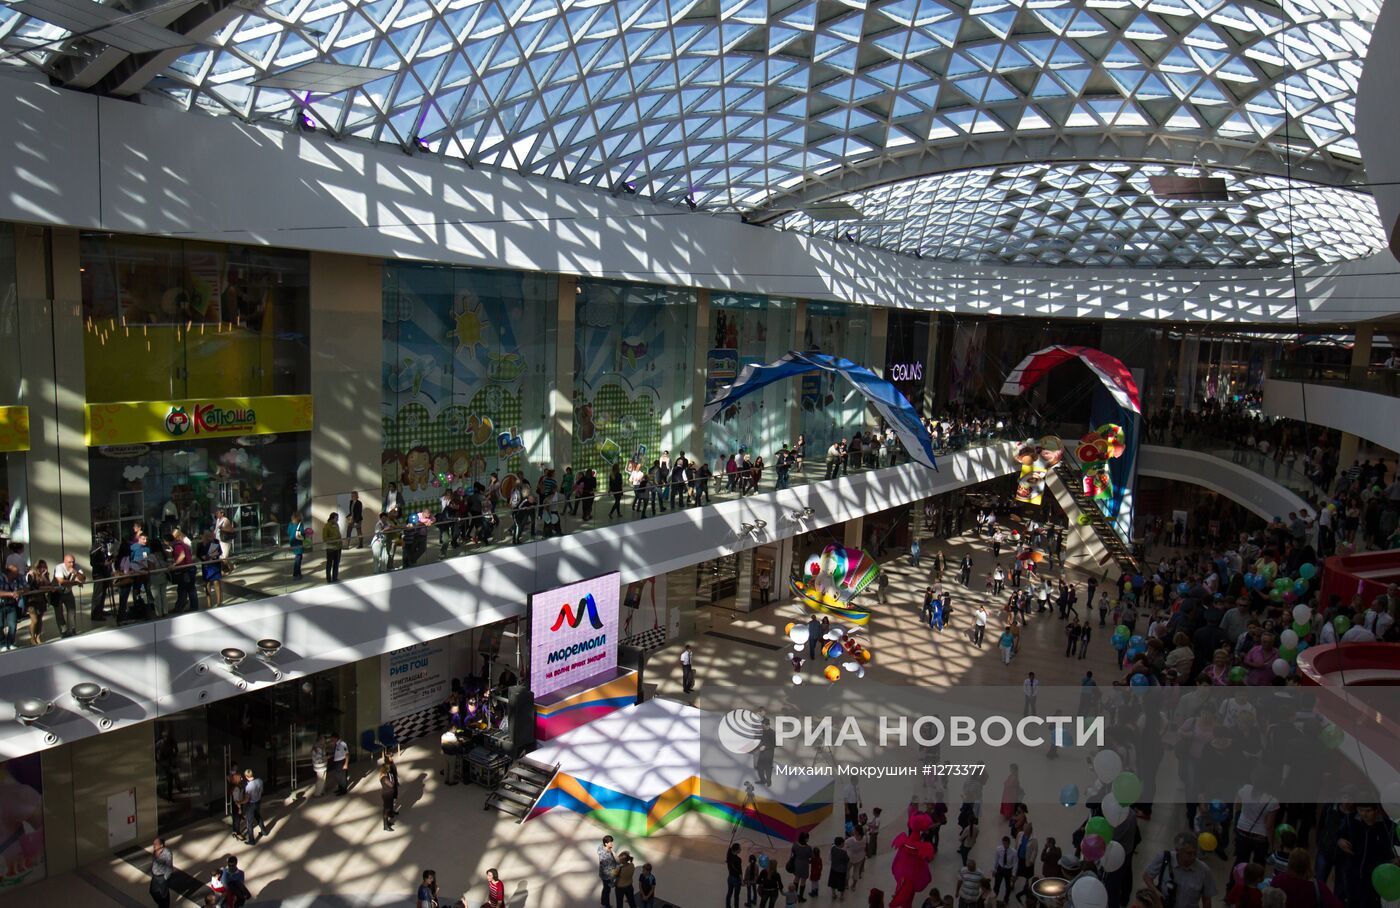 Открытие торгово-развлекательного центра "МореМолл" в Сочи